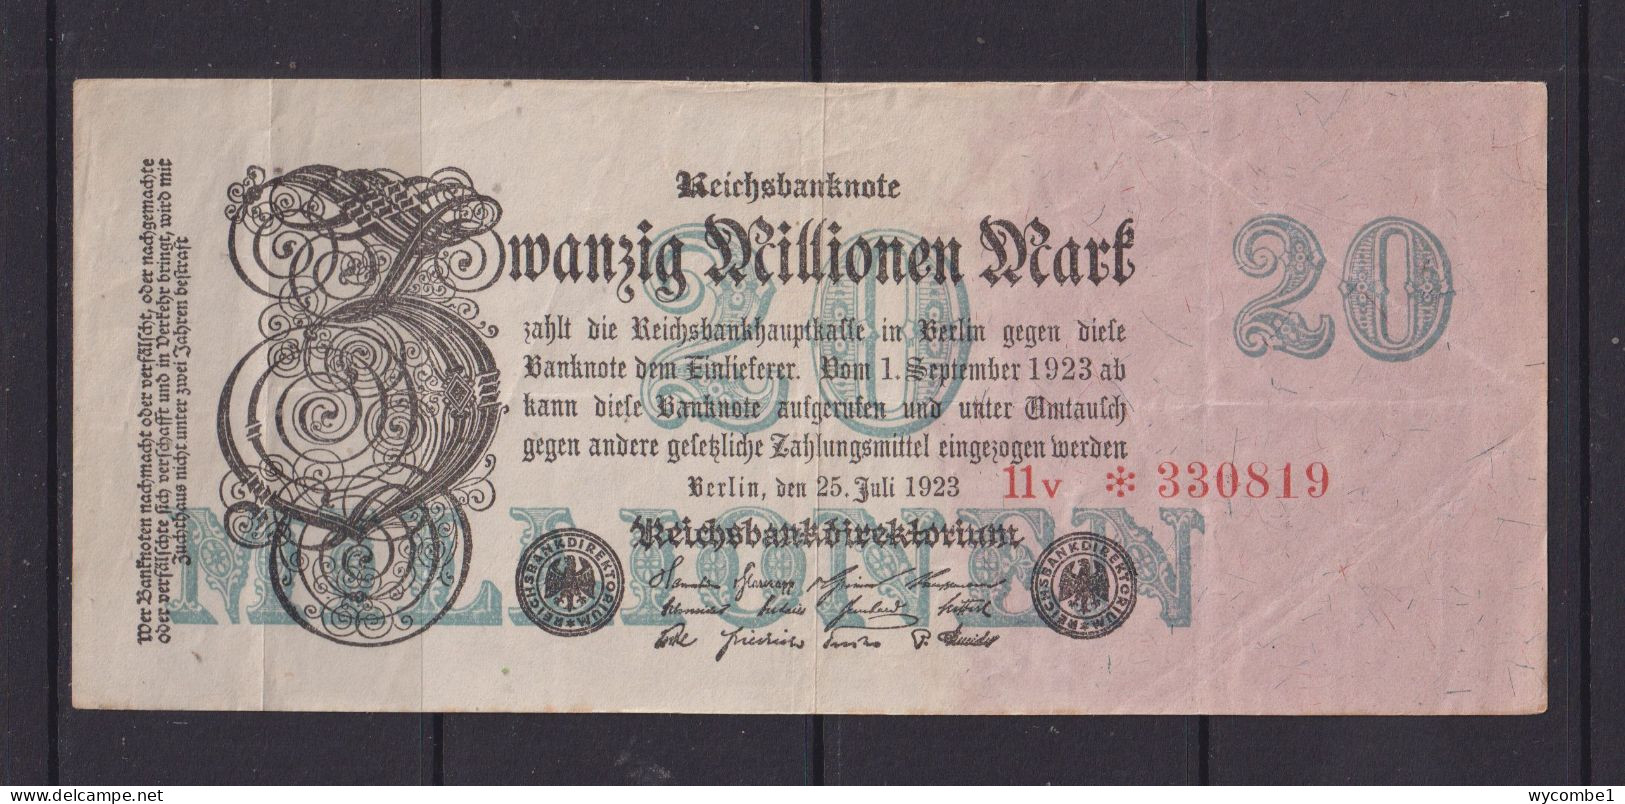 GERMANY - 1923 20 Millionen Mark XF Banknote - 20 Miljoen Mark